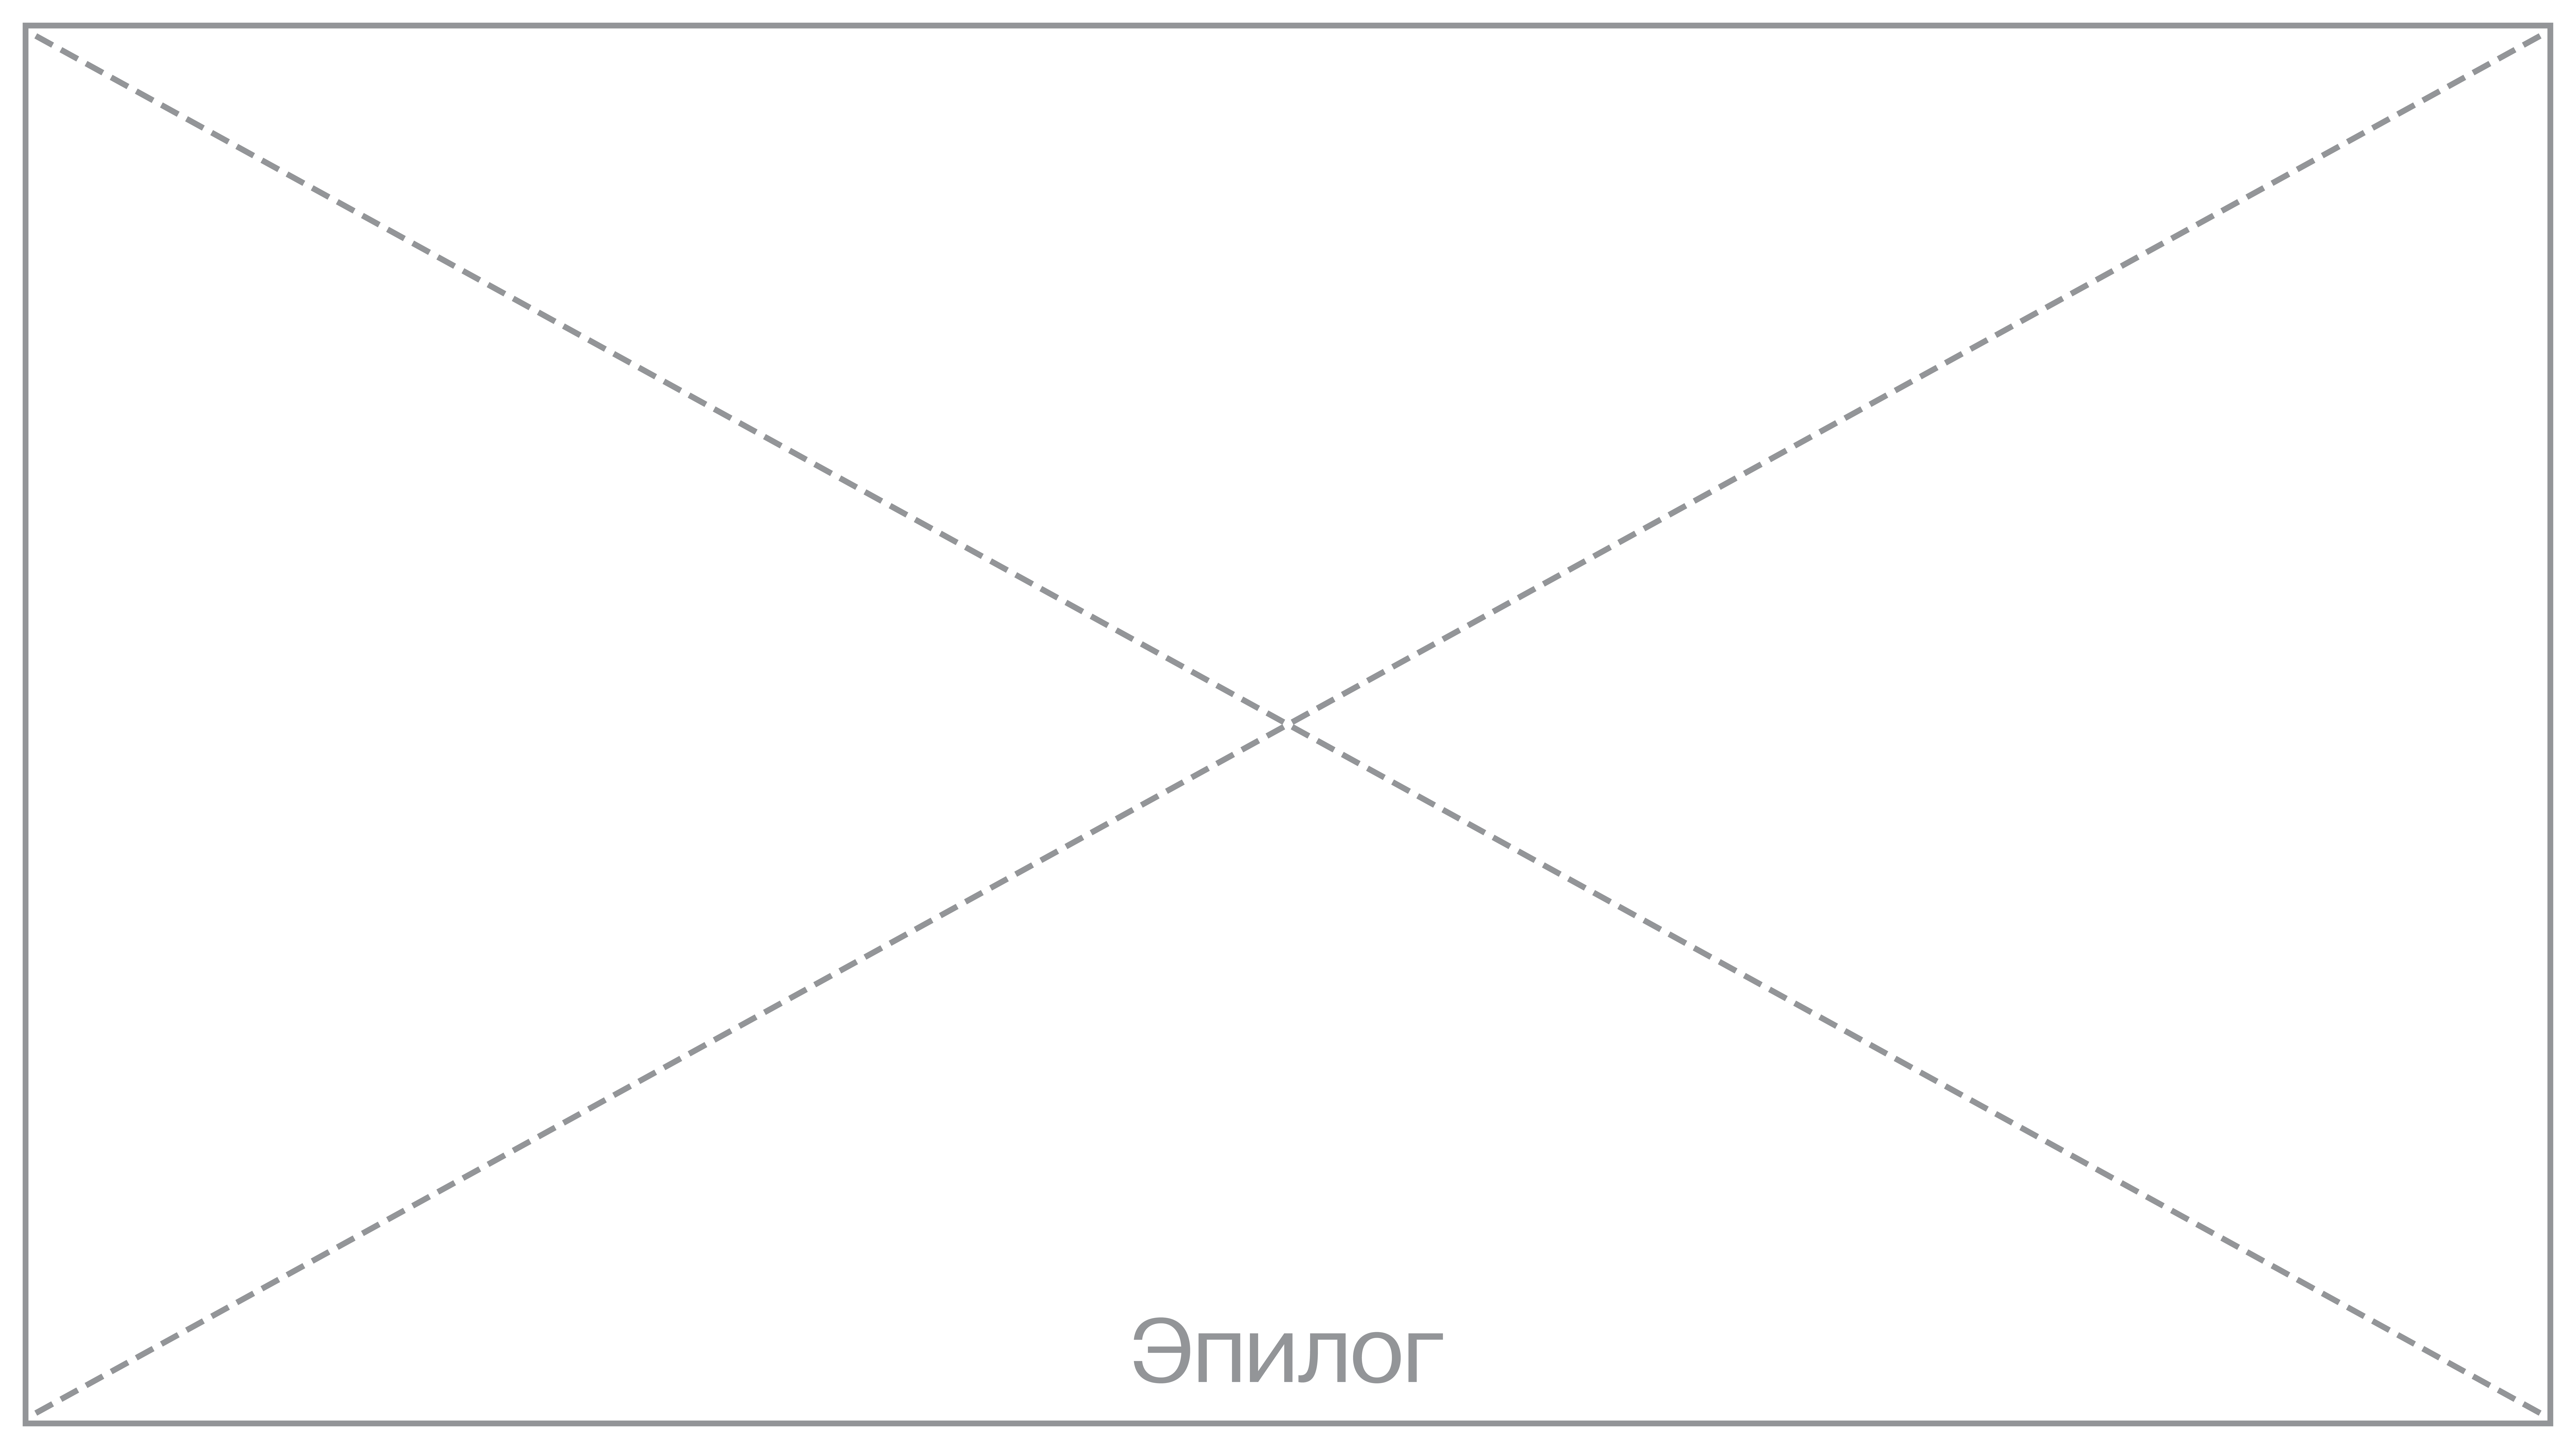 Изображение: белый прямоугольник, перечеркнутый накрест по диагонали серыми пунктирными линиями. В нижней части надпись серым цветом «Эпилог»